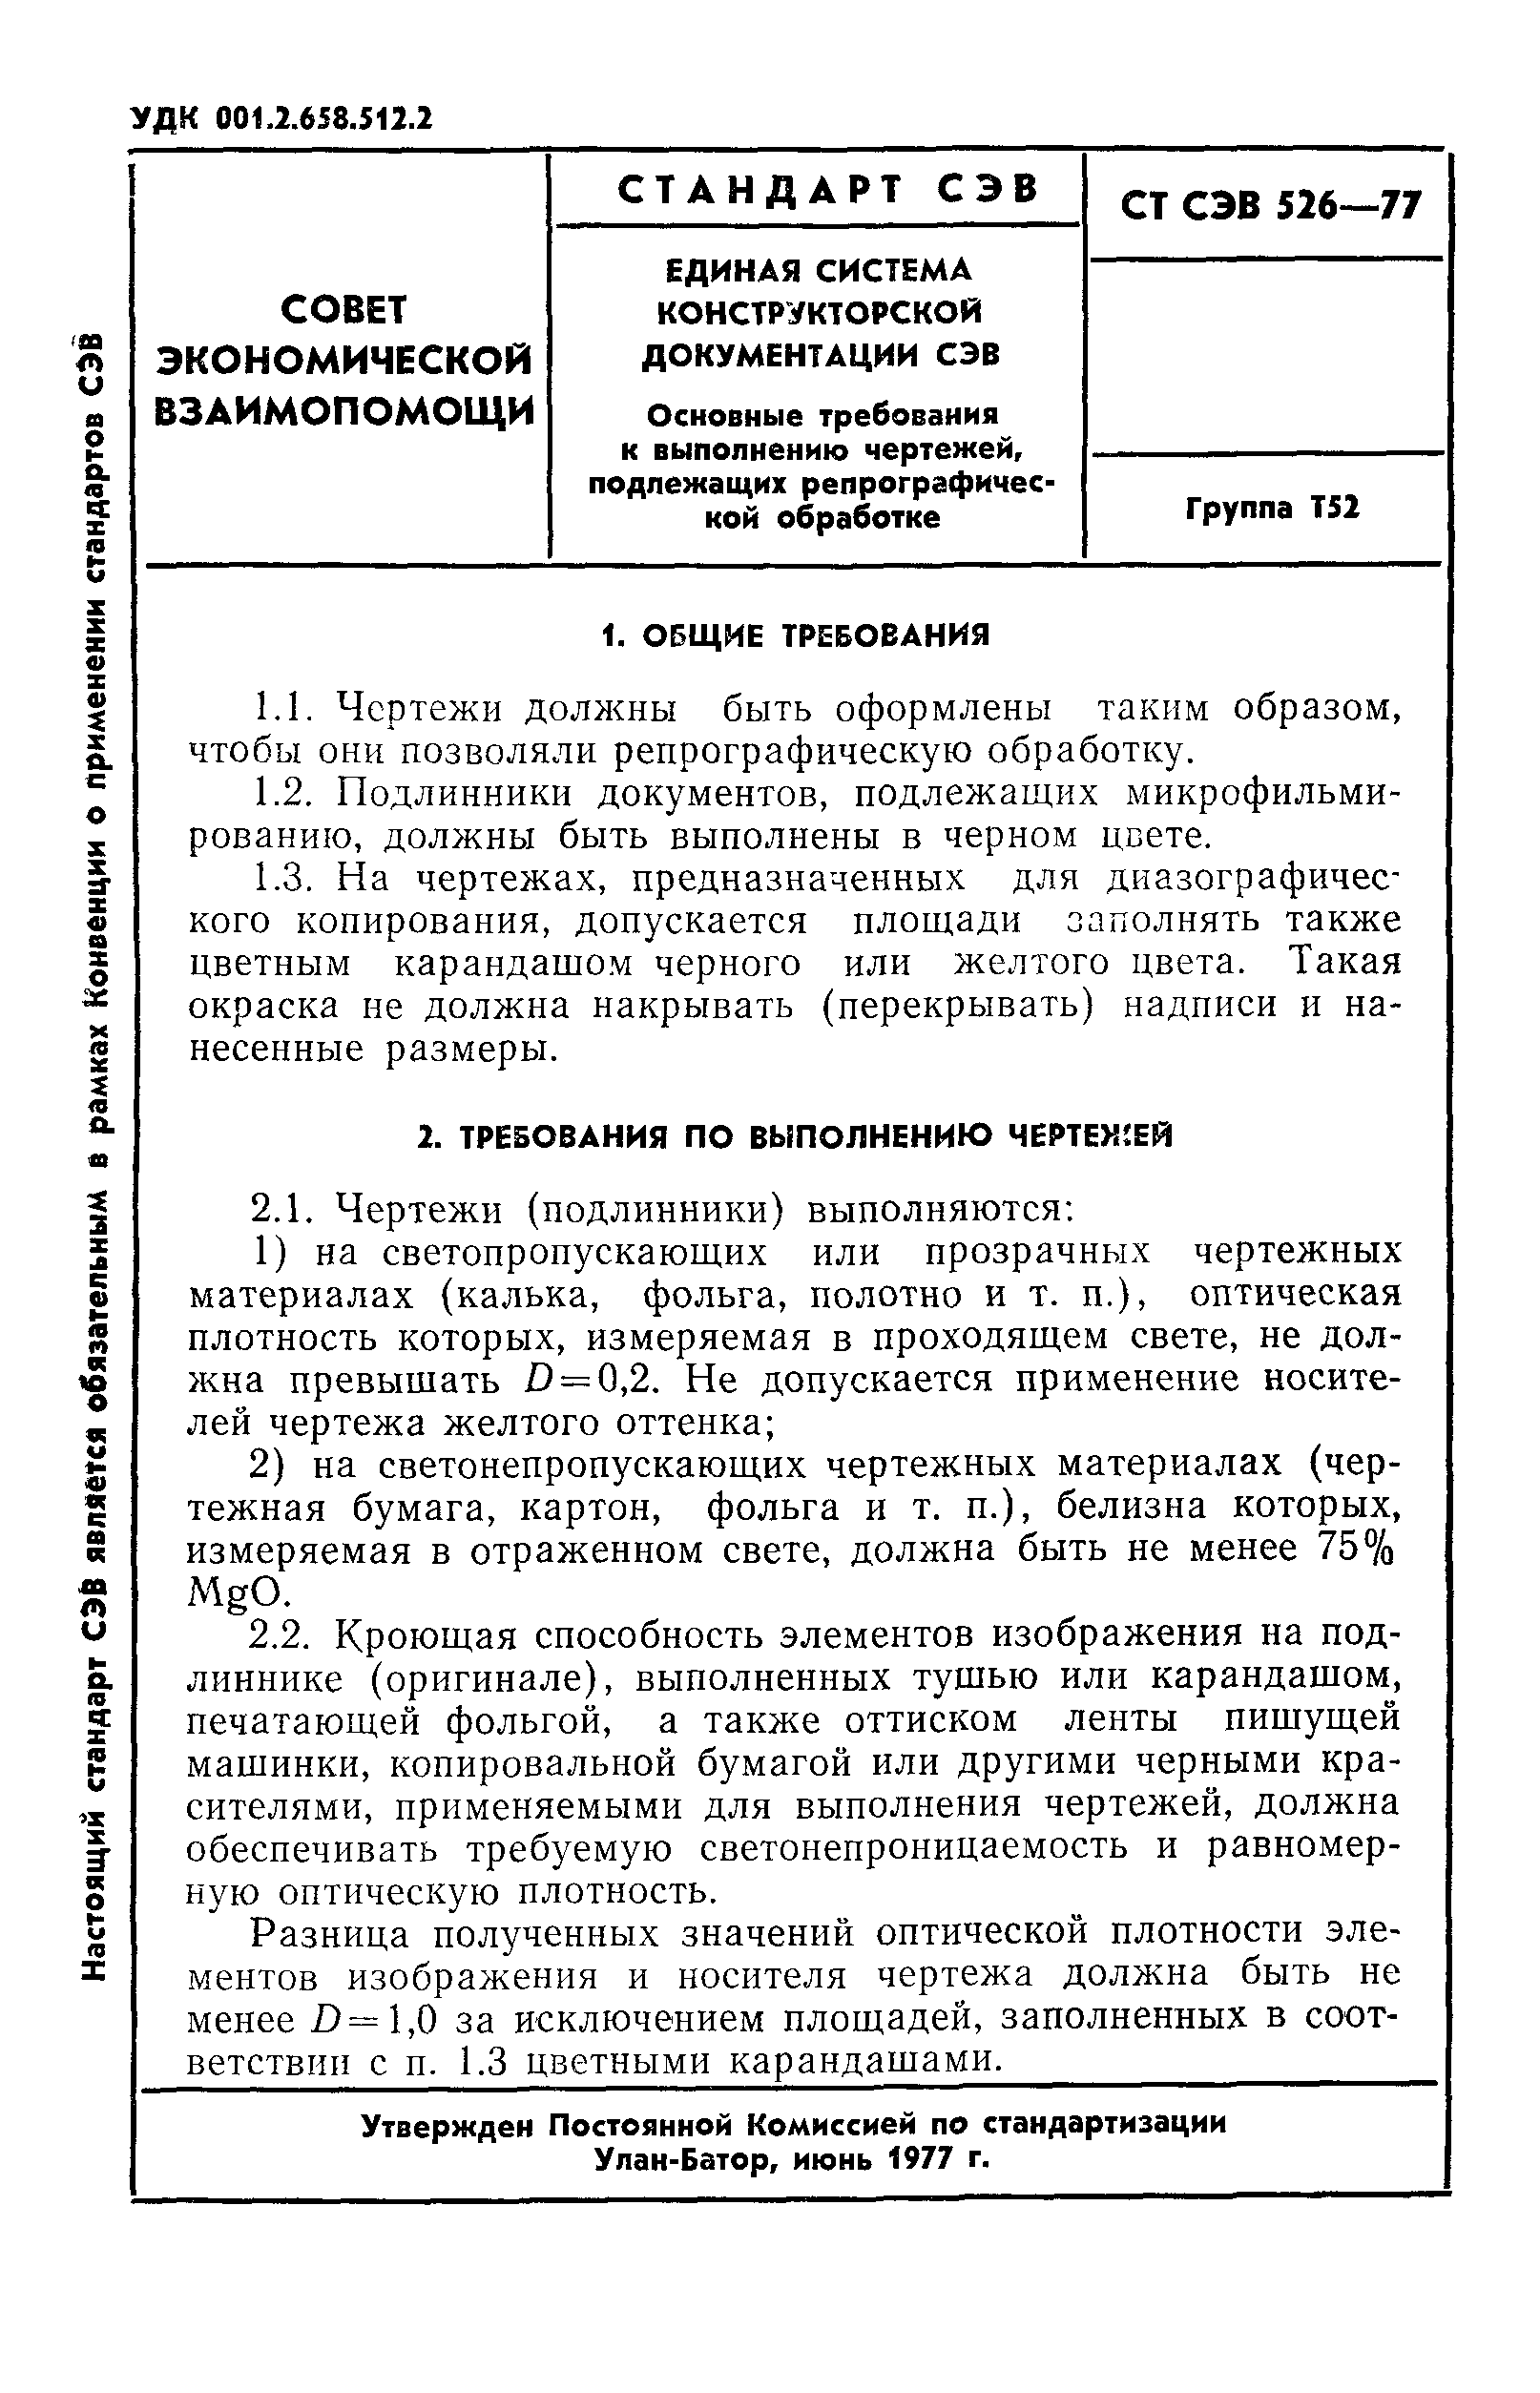 СТ СЭВ 526-77